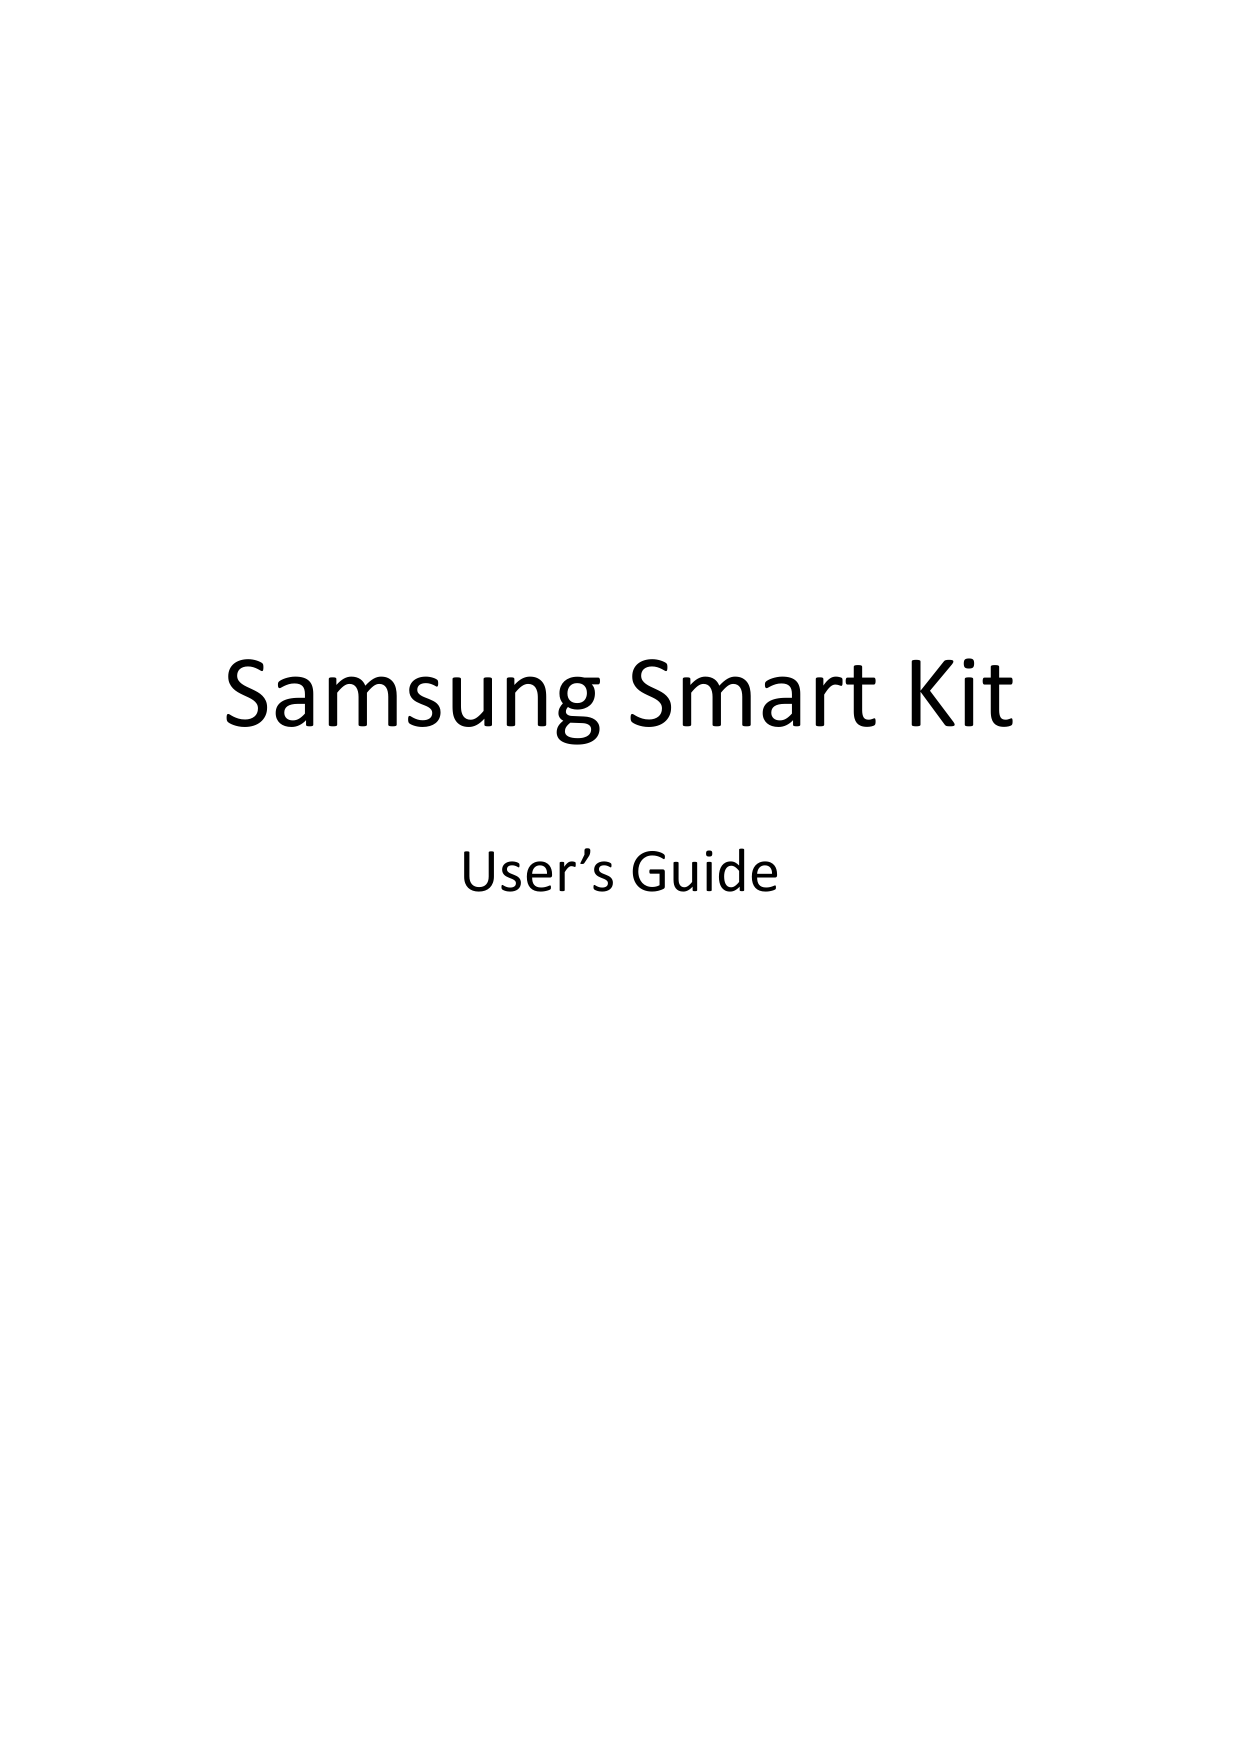               Samsung Smart Kit  User’s Guide       